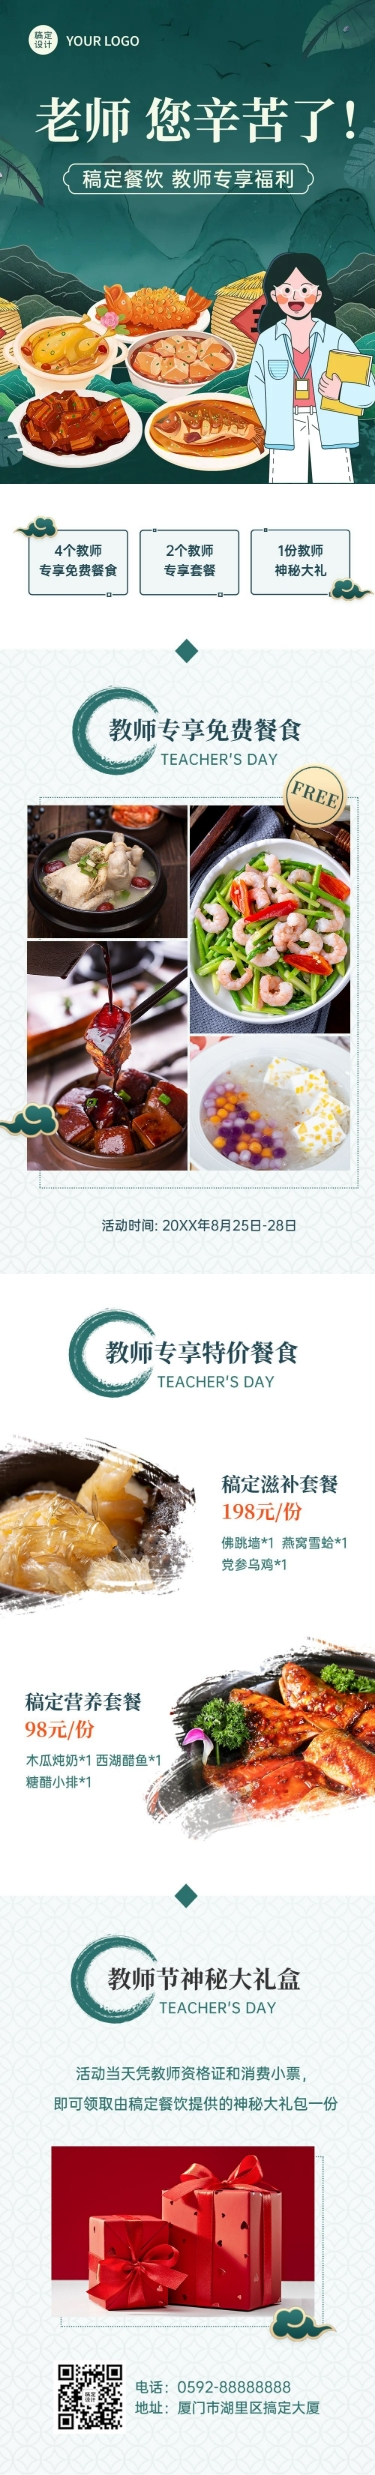 教师节餐饮门店活动长图